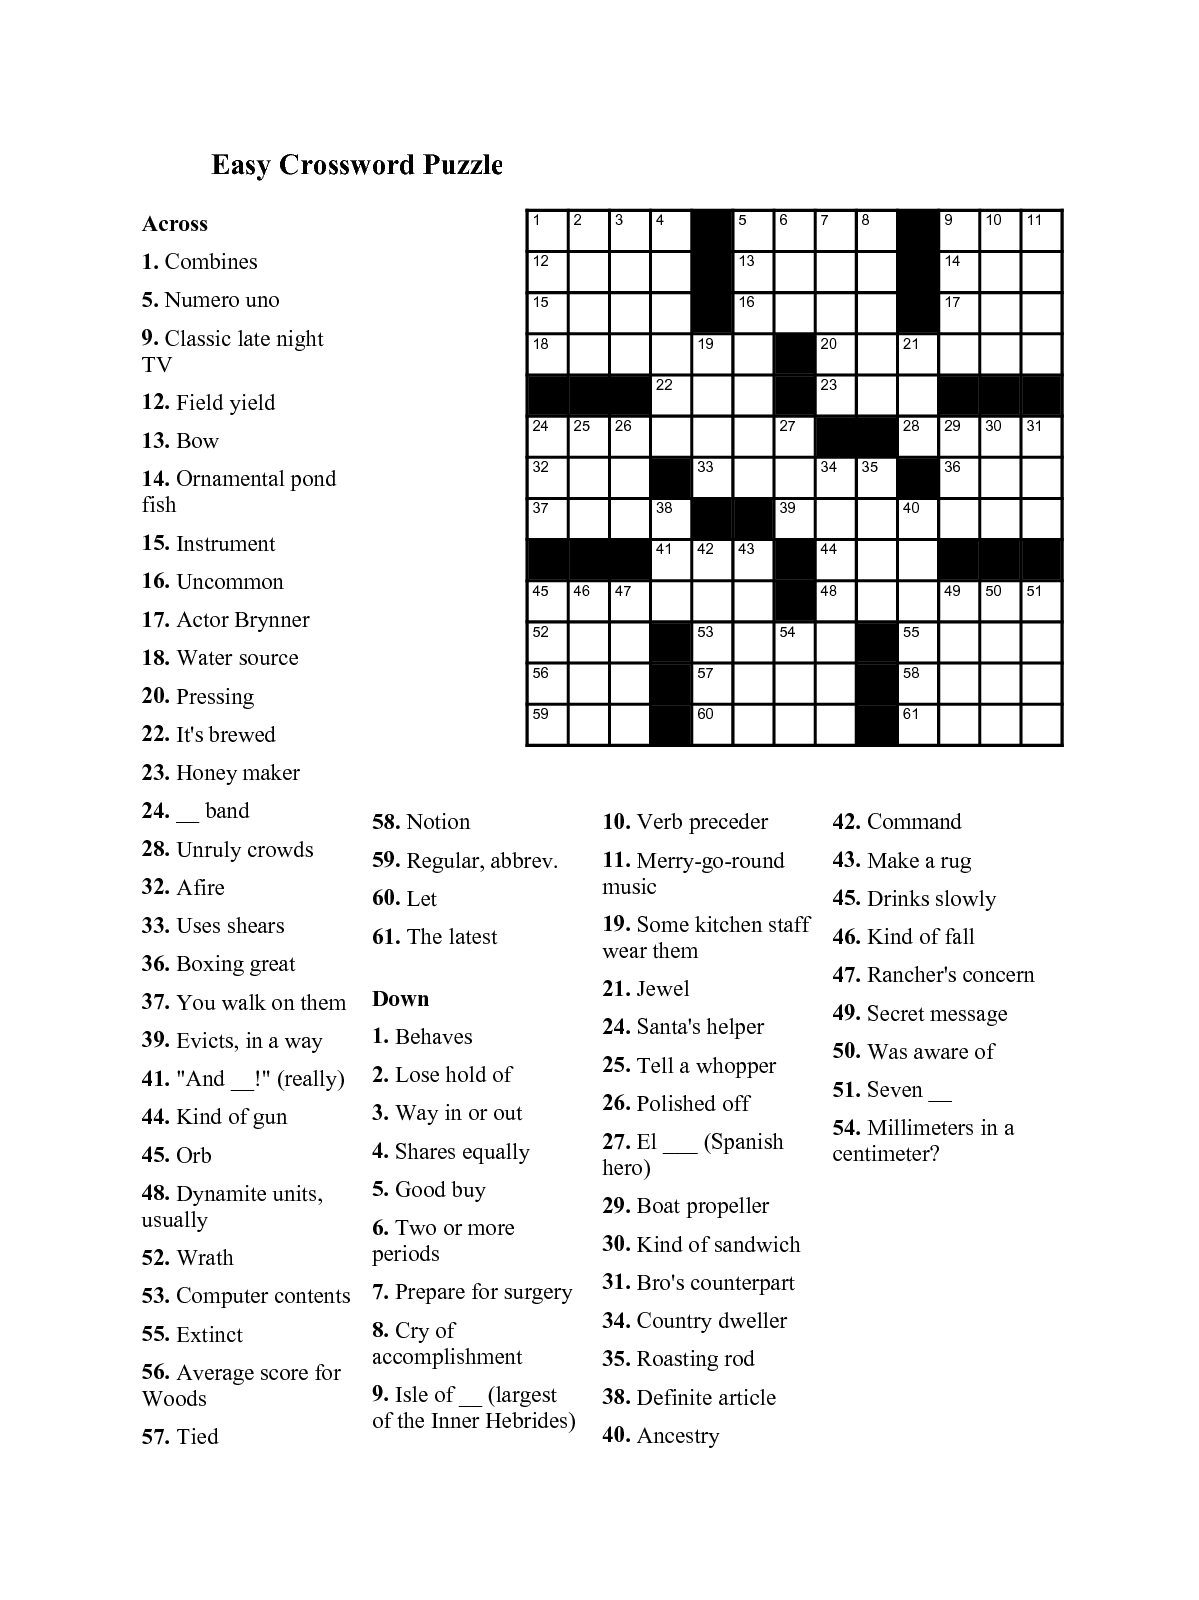 easy-printable-crossword-puzzles-for-seniors-easy-crossword-puzzle